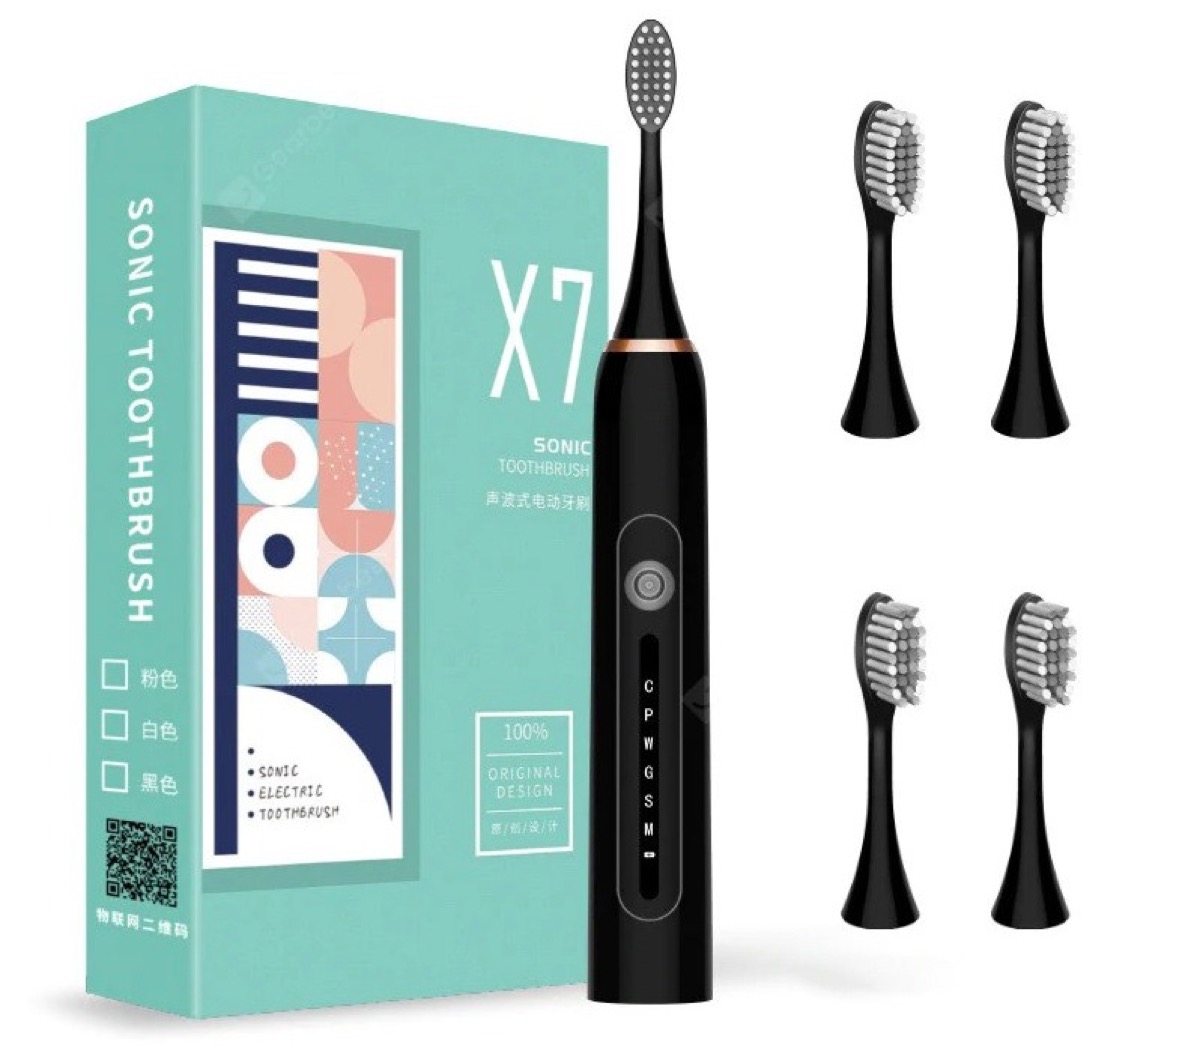 Lo spazzolino sonico Monclique X-7 è in offerta a soli 10,14 euro